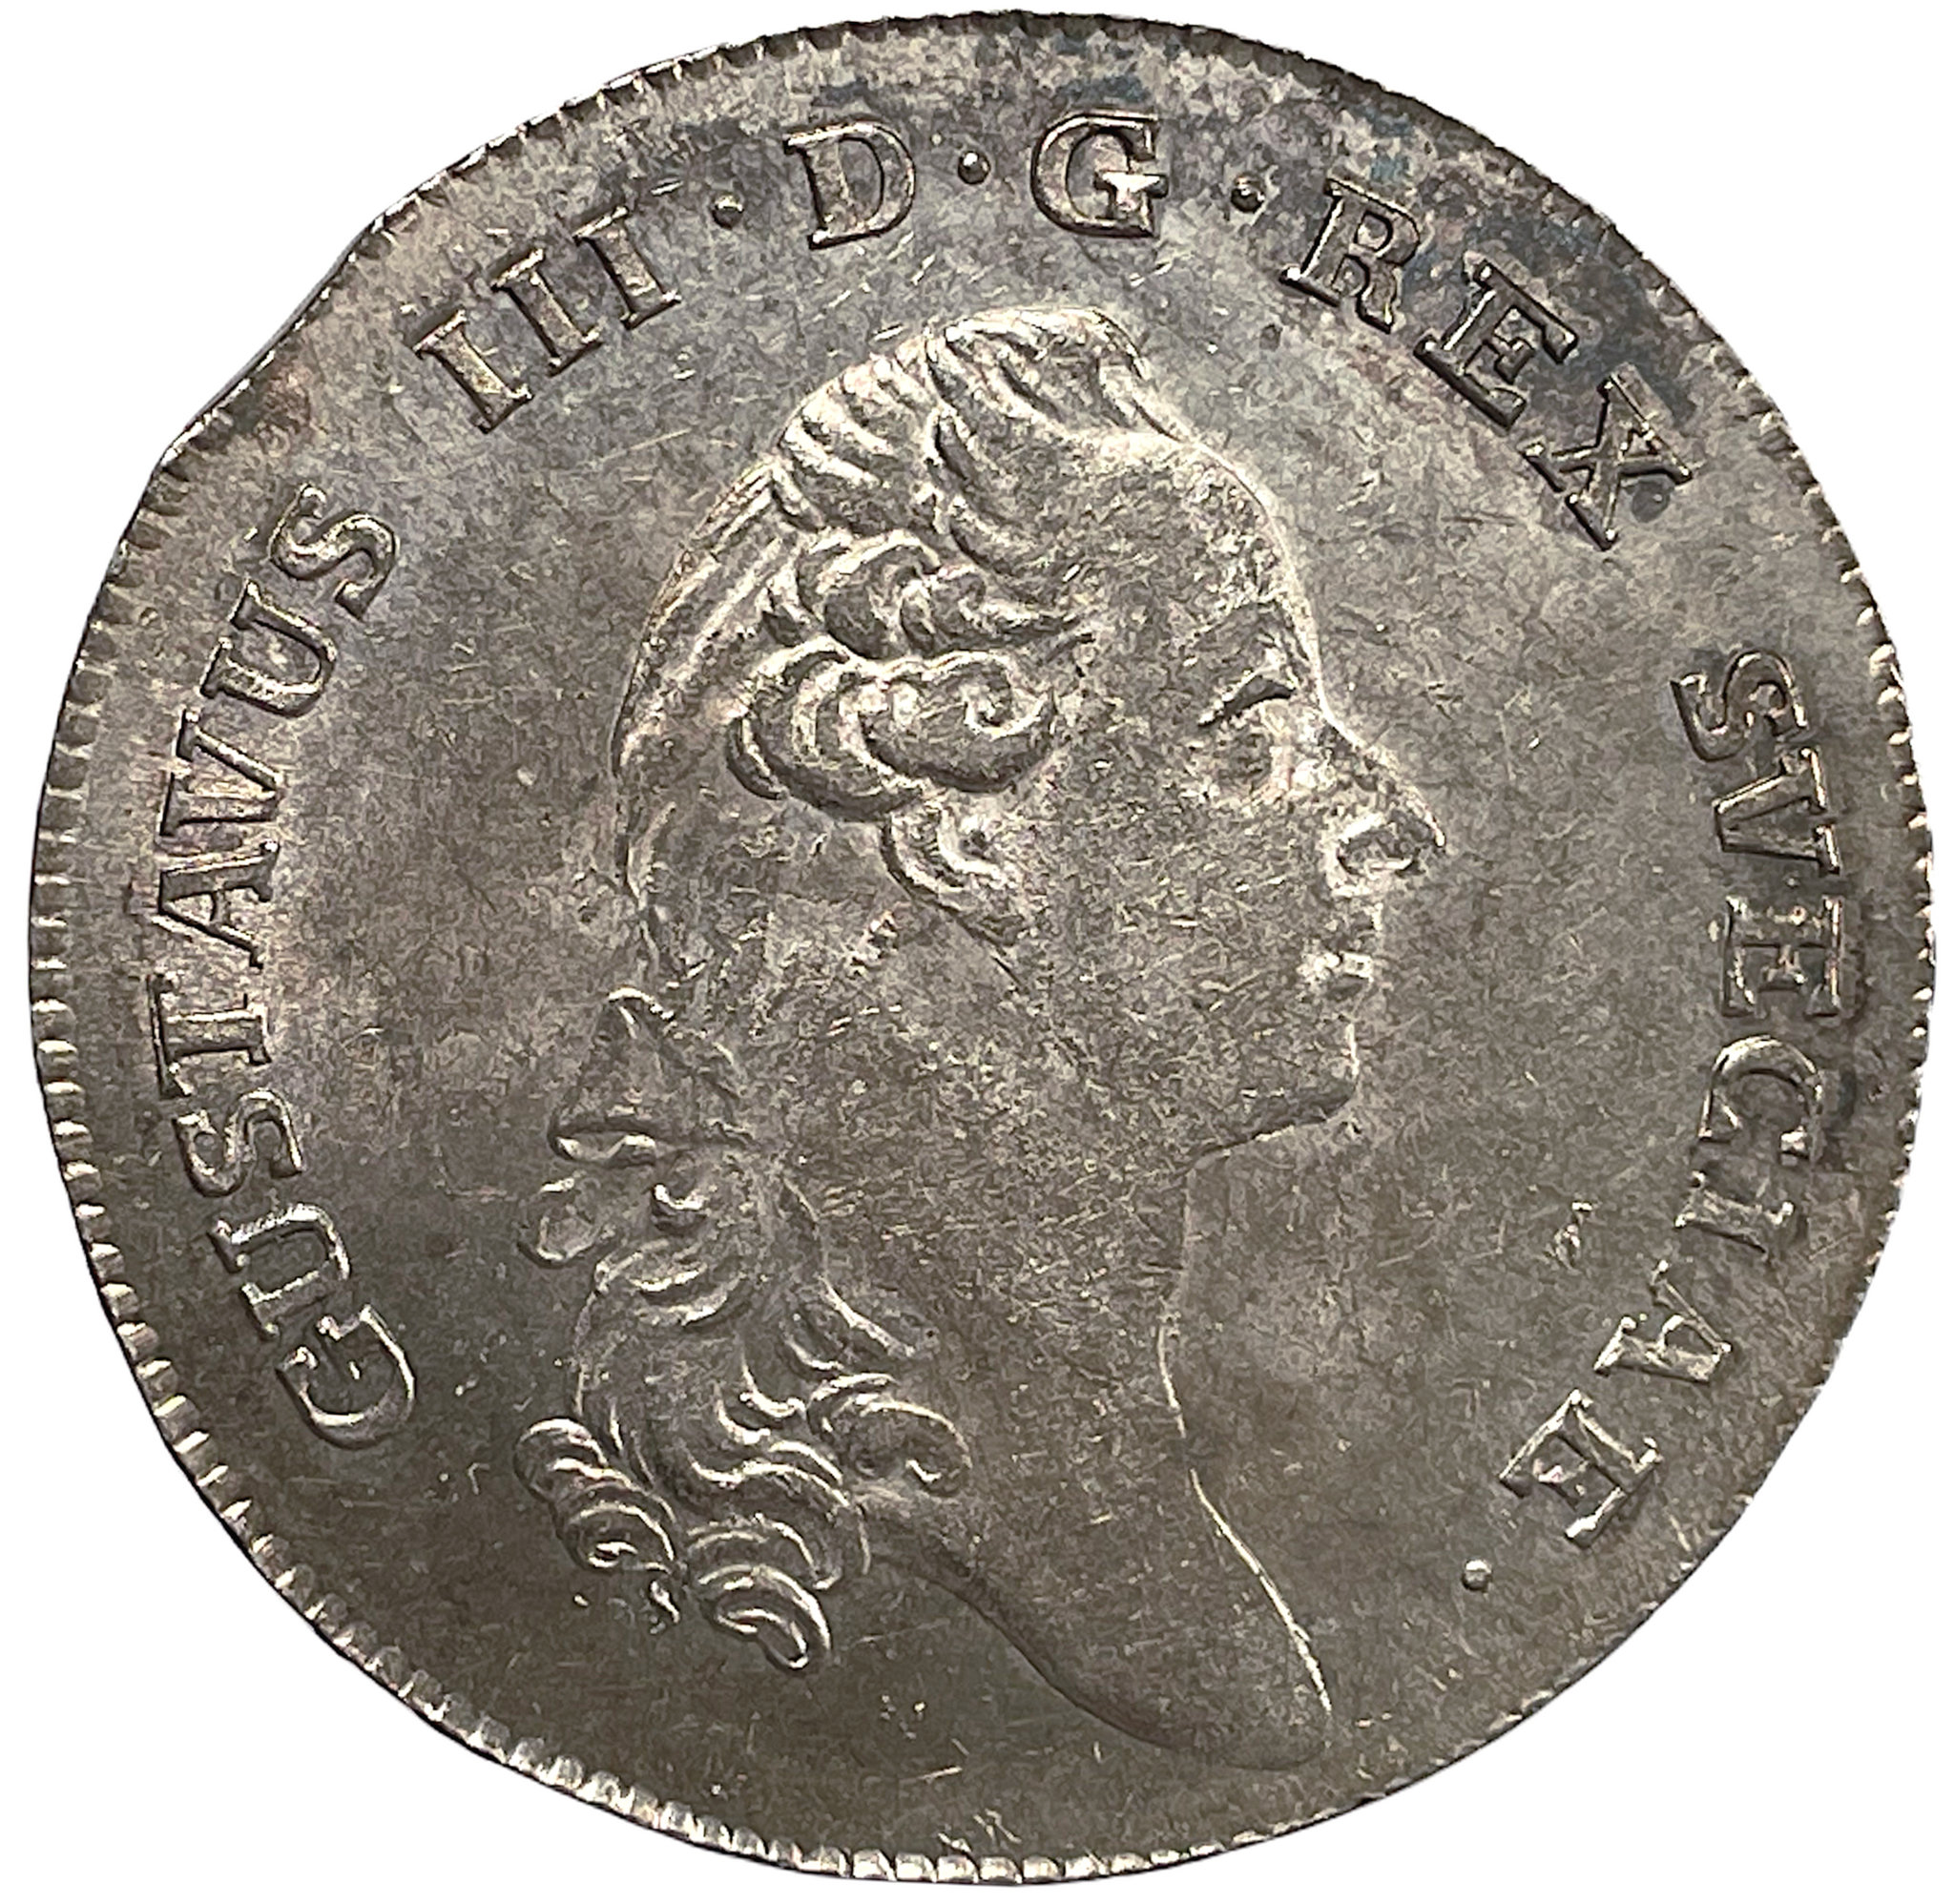 Gustav III - Riksdaler 1783 - Vackert exemplar